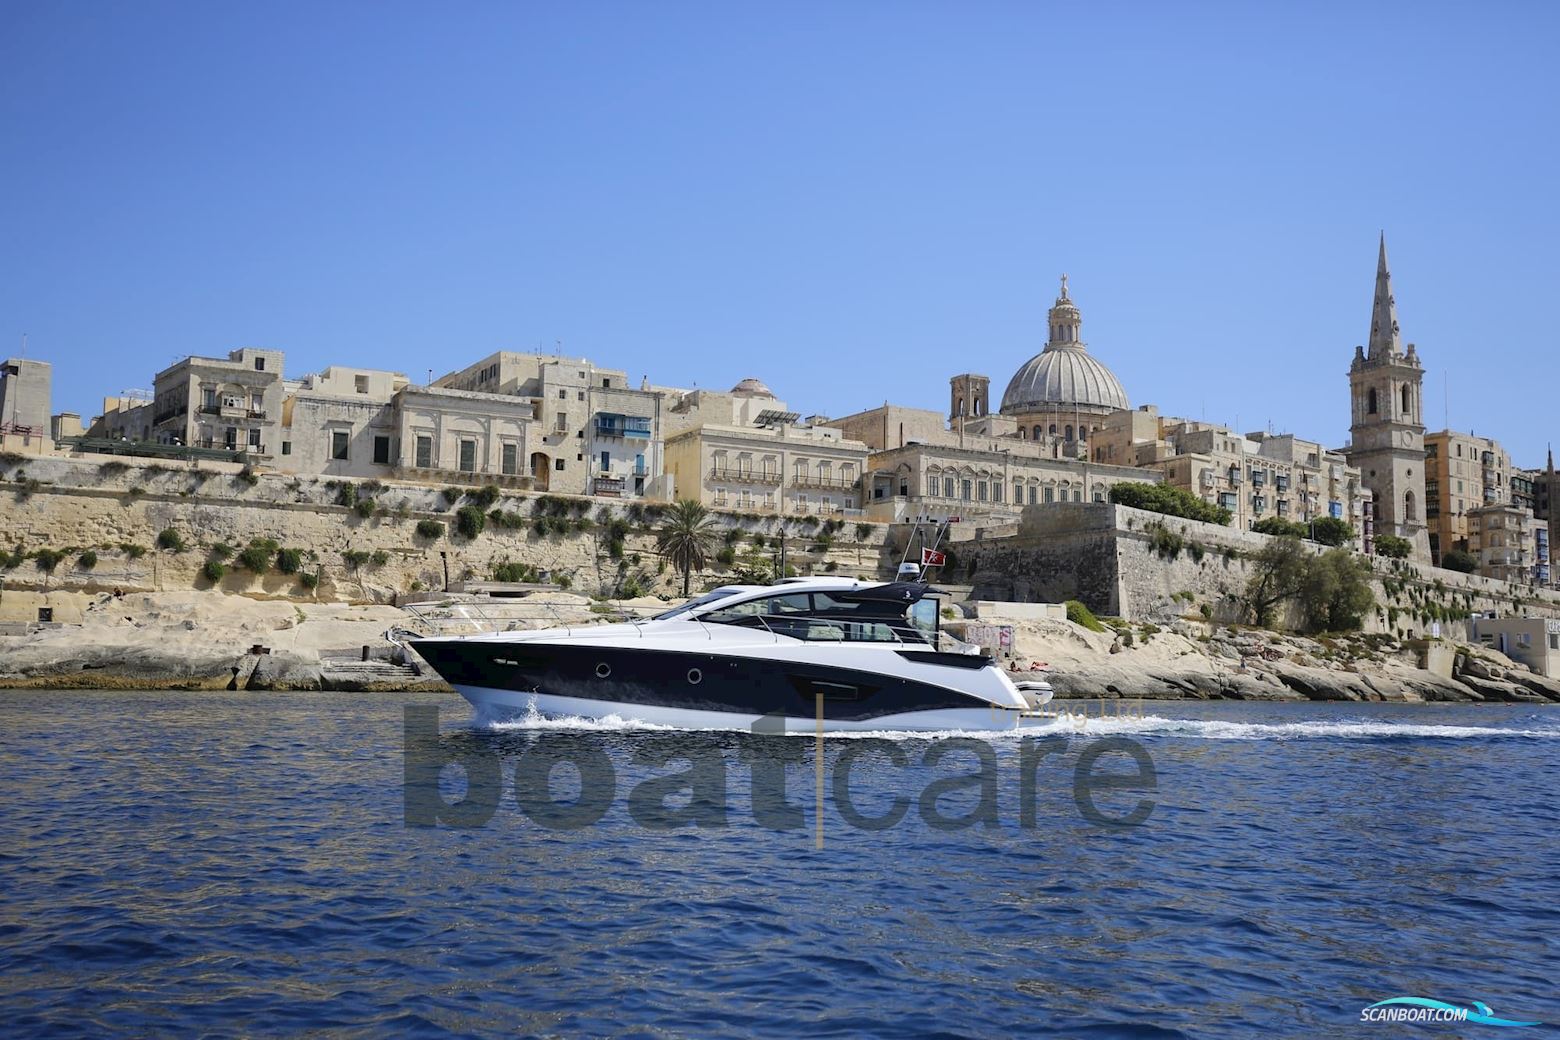 Beneteau Gran Turismo 46 Motorboot 2017, mit Volvo Ips 600 motor, Malta